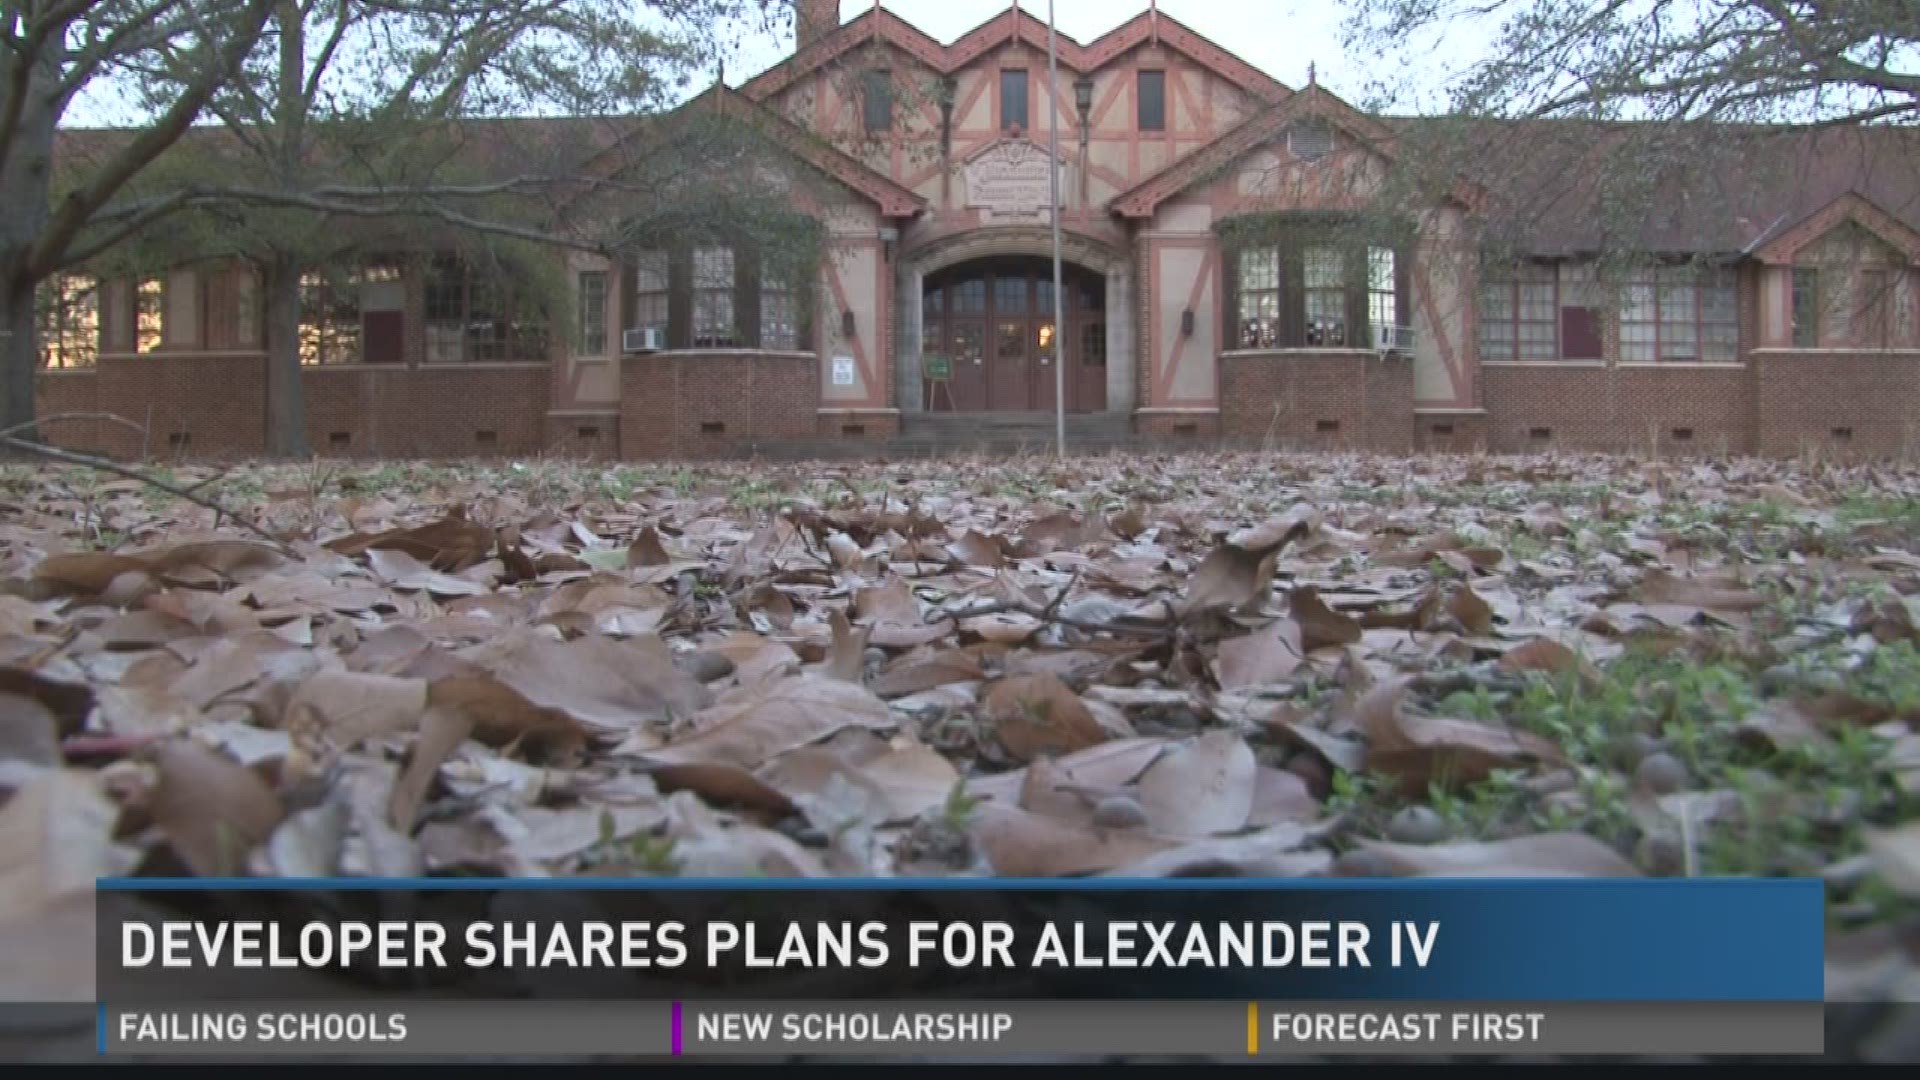 Developer shares plans for Alexander IV